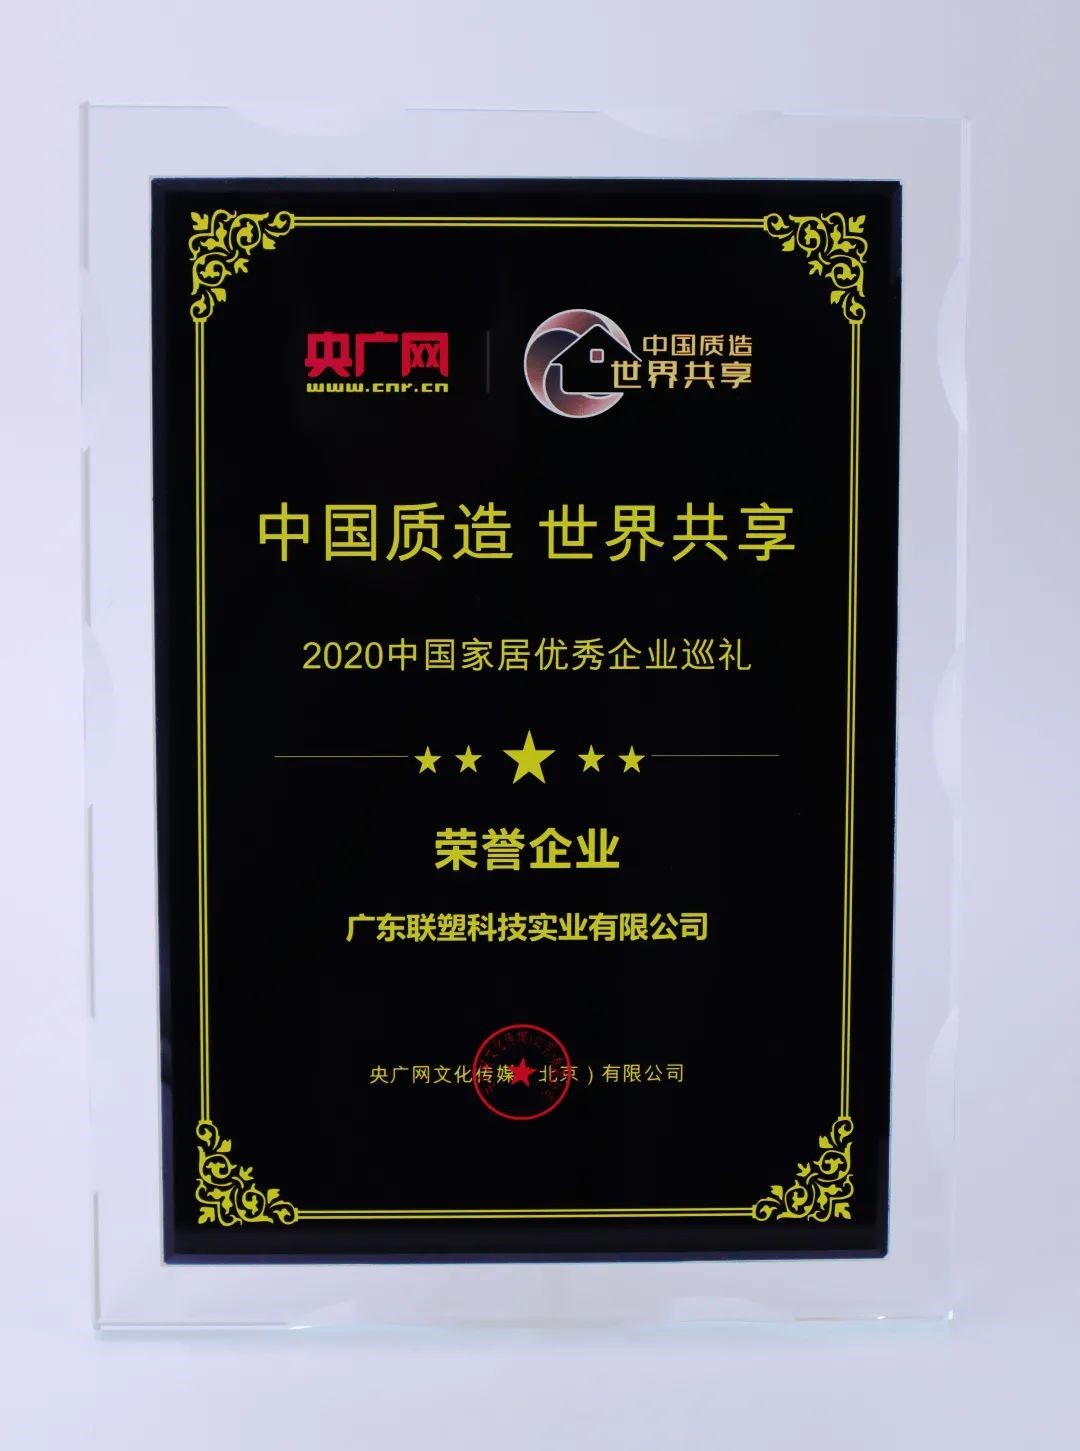 中国联塑荣获“2020中国家居优秀企业巡礼荣誉企业”